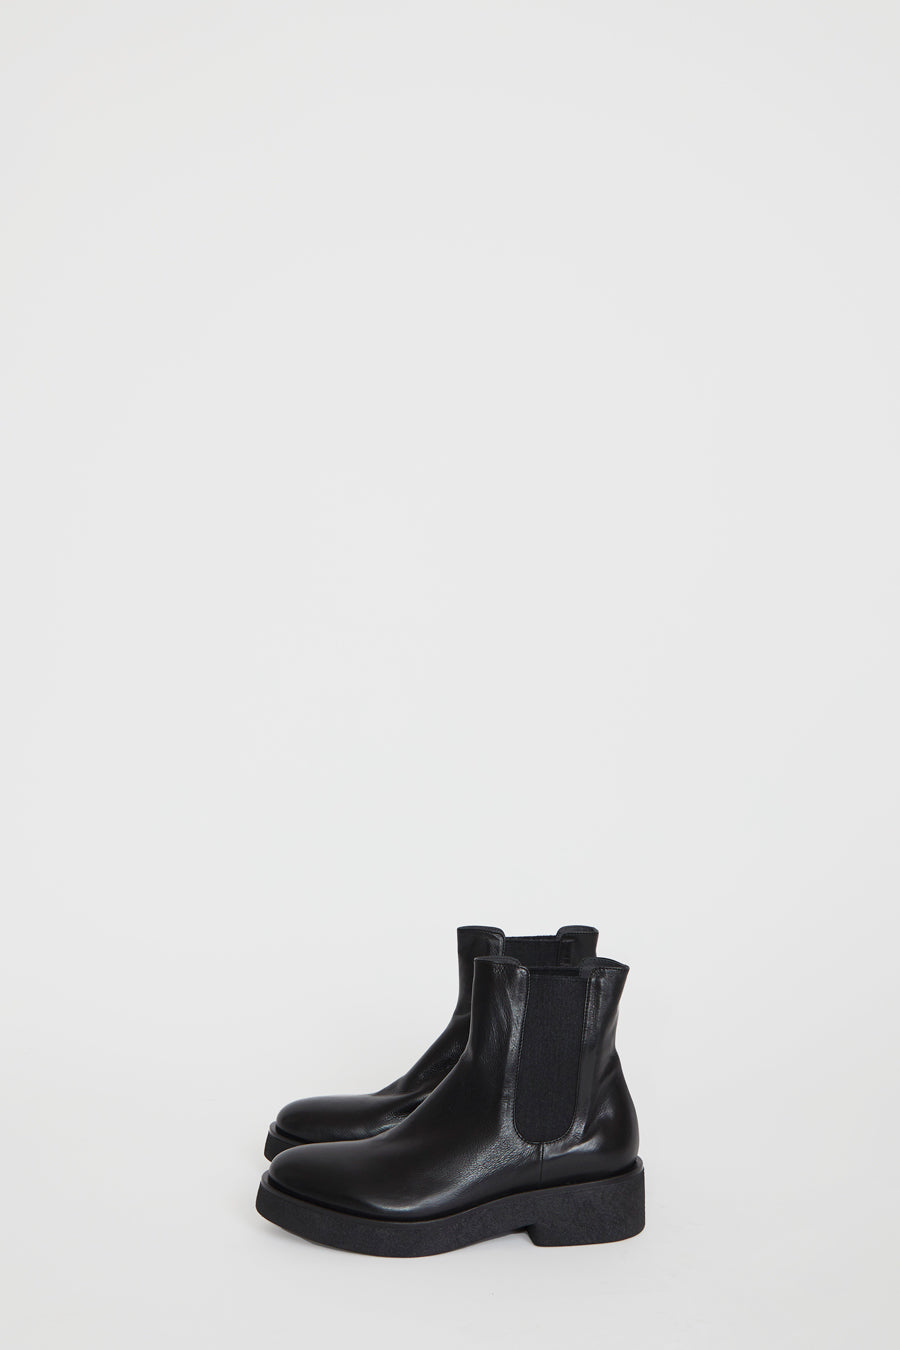 black crepe sole boots